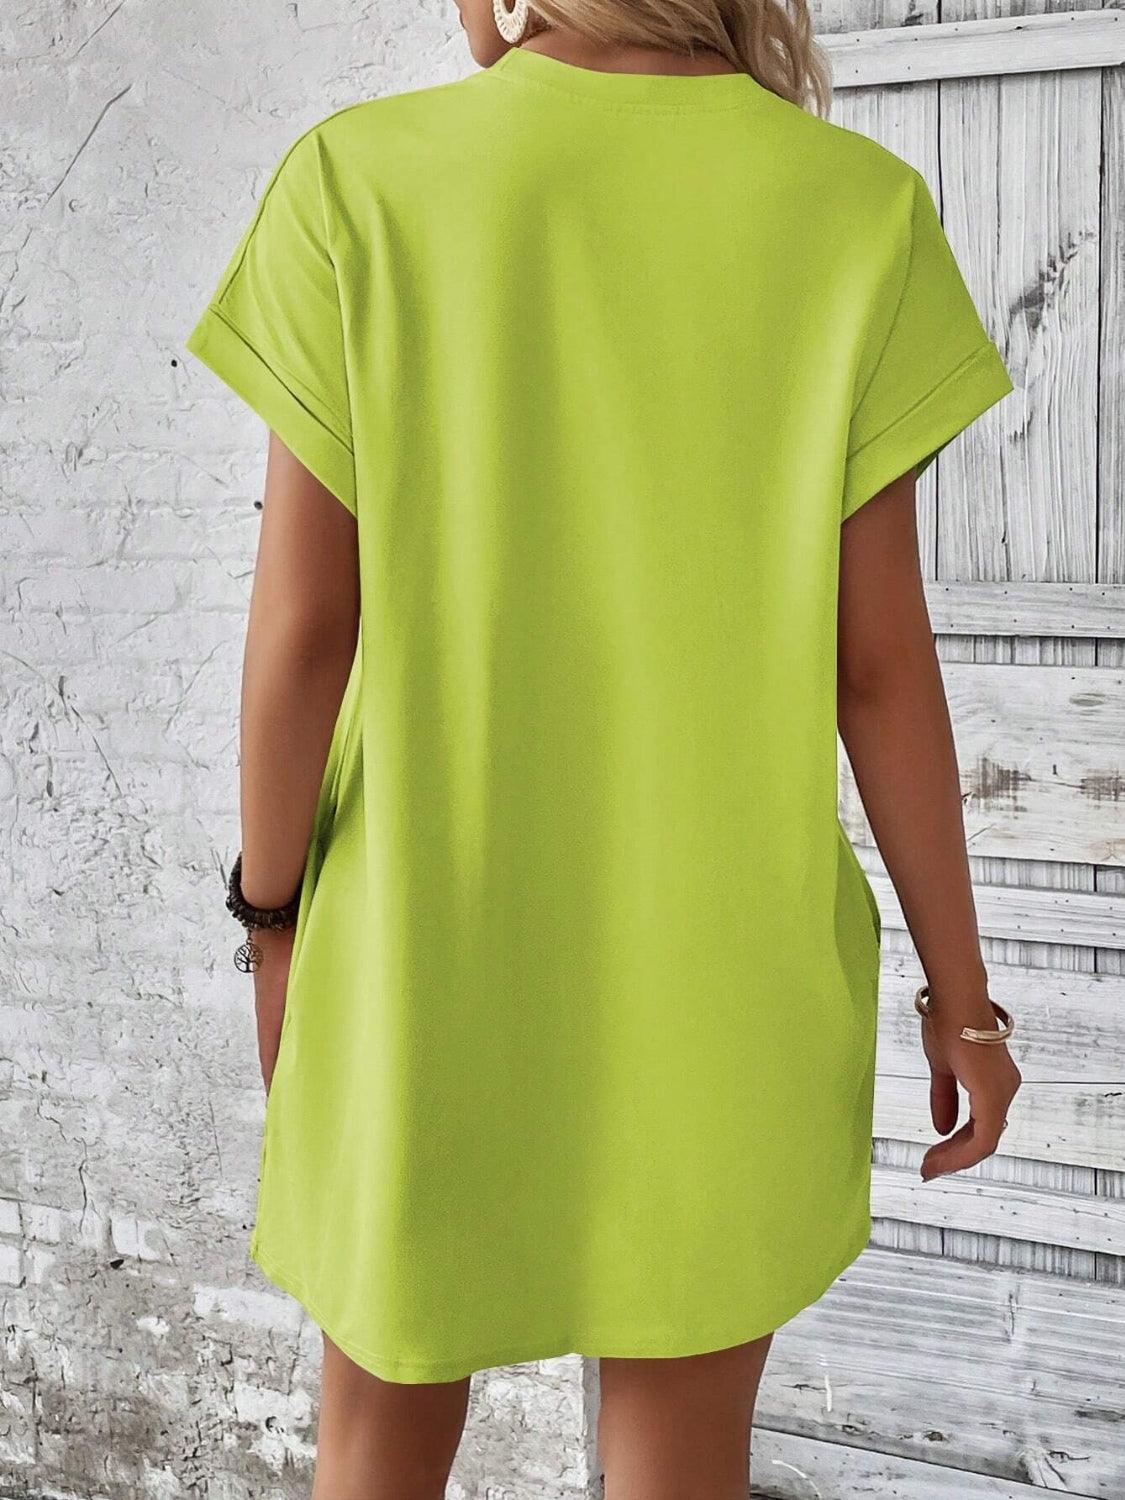 Bona Fide Fashion - Round Neck Short Sleeve Mini Dress - Women Fashion - Bona Fide Fashion